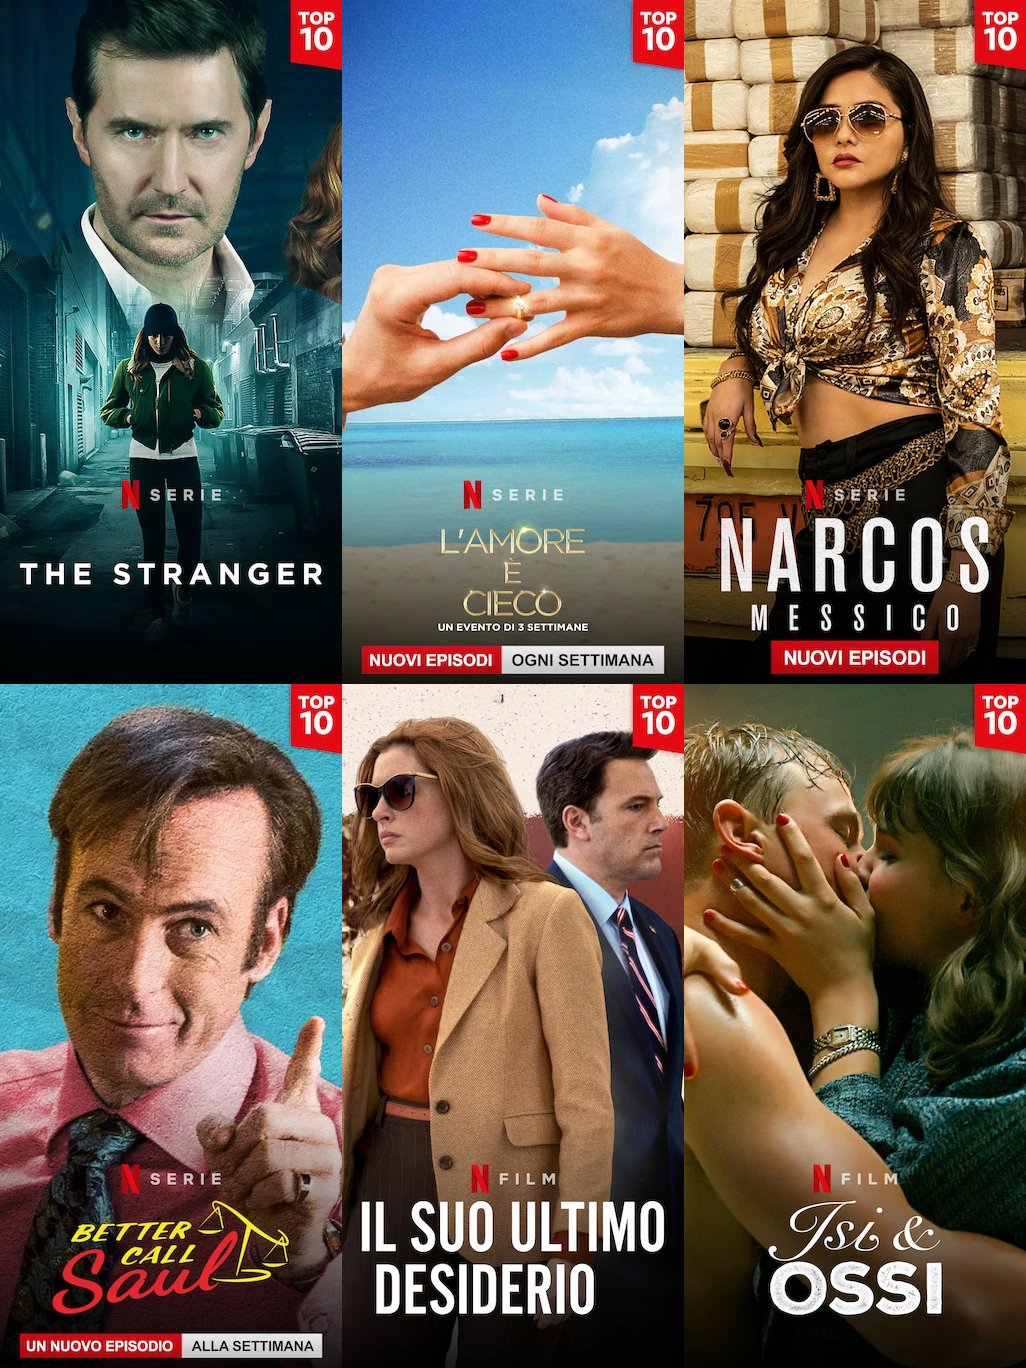 Le immagini verticali  della TOP10 delle produzioni originali Netflix 